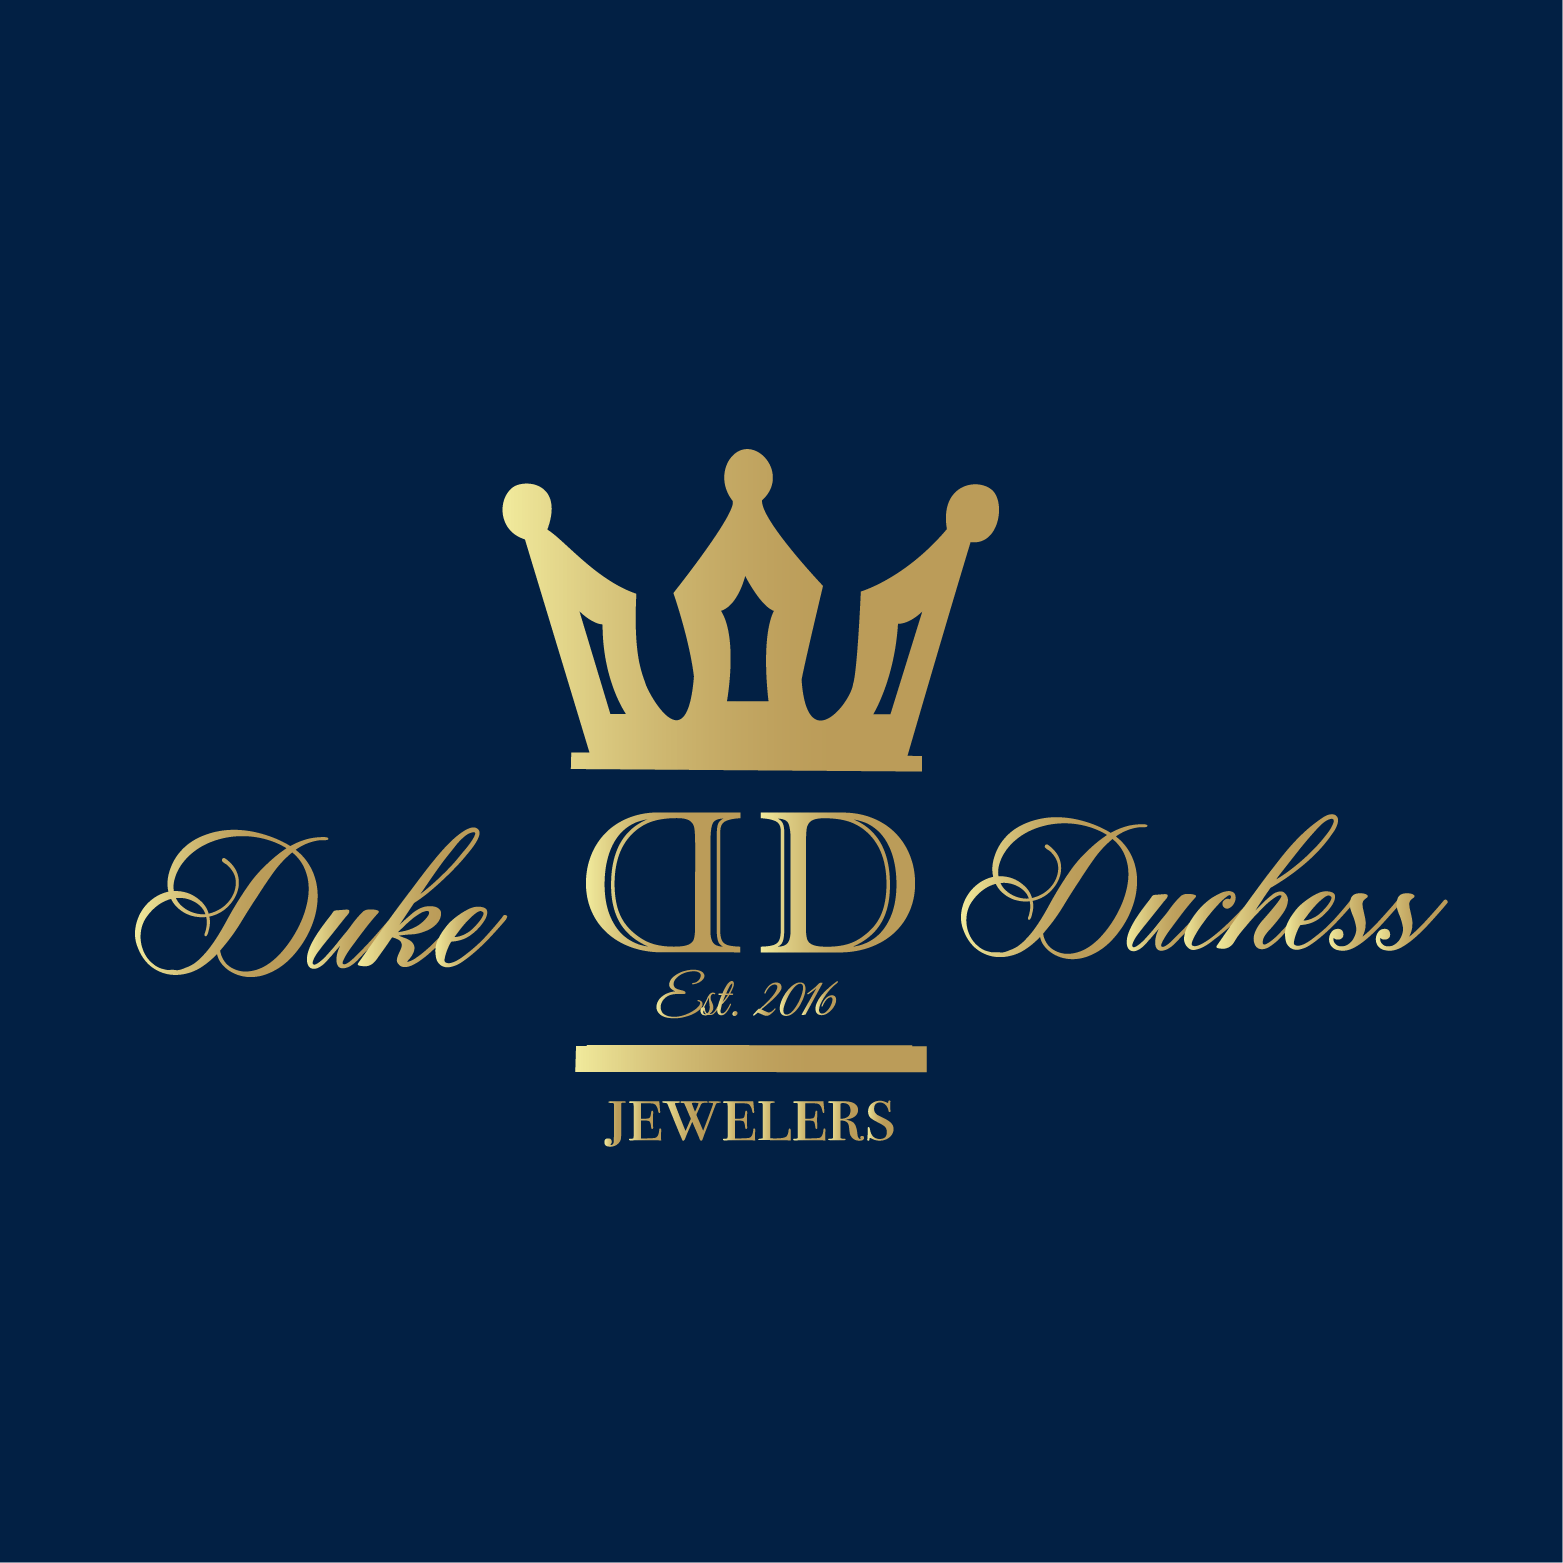 Duchess Logo - About Us